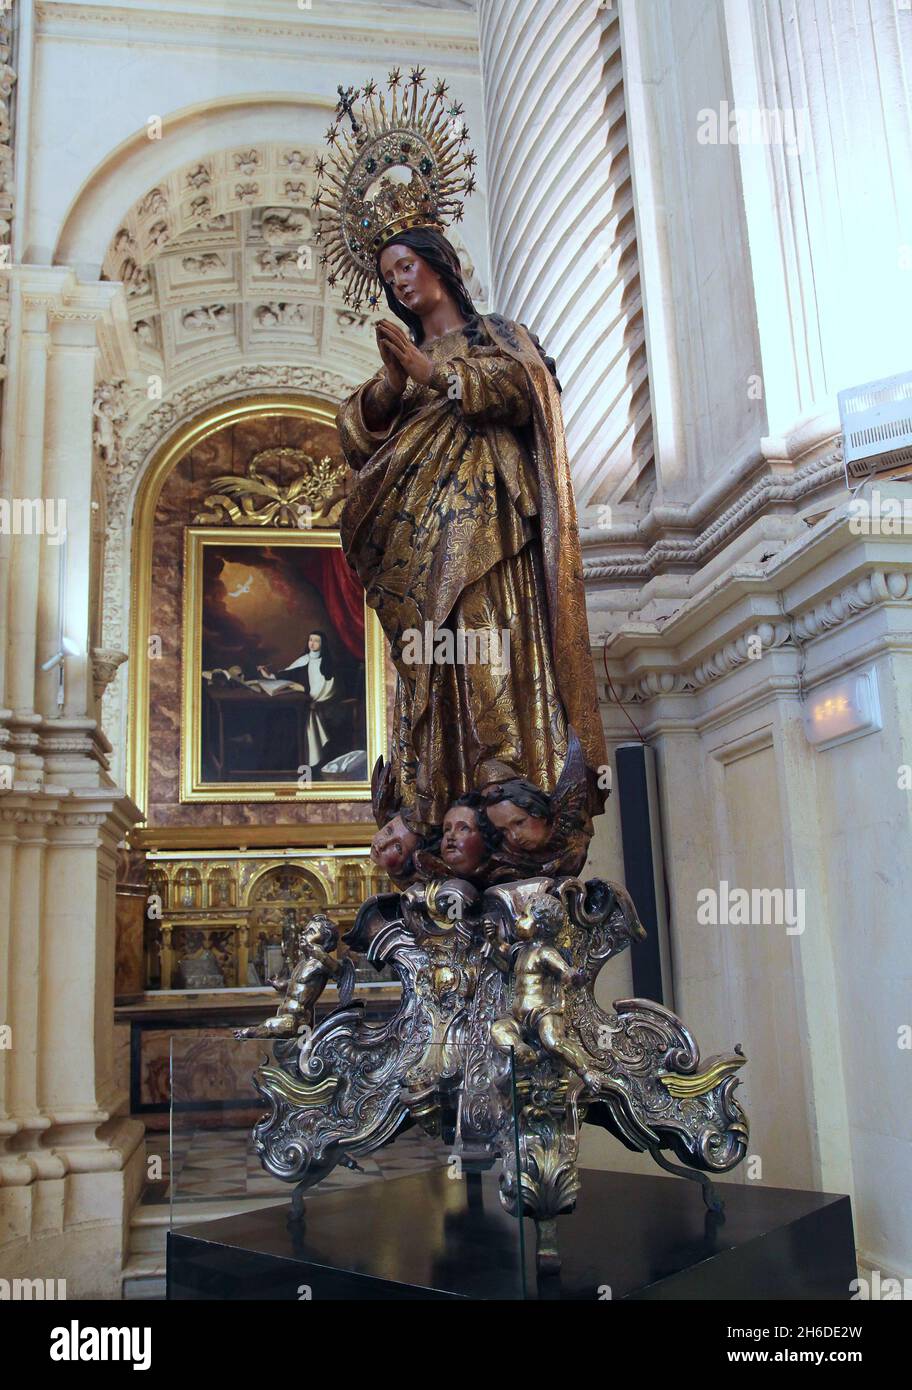 Inmaculada Concepción de la sacristía principal de la Catedral de Sevilla (1658) por el escultor Alonso Martínez.(1612 - 1668 ) Alonso fue un escultor barroco que trabajó principalmente en las ciudades de Cádiz y Sevilla. Foto de stock